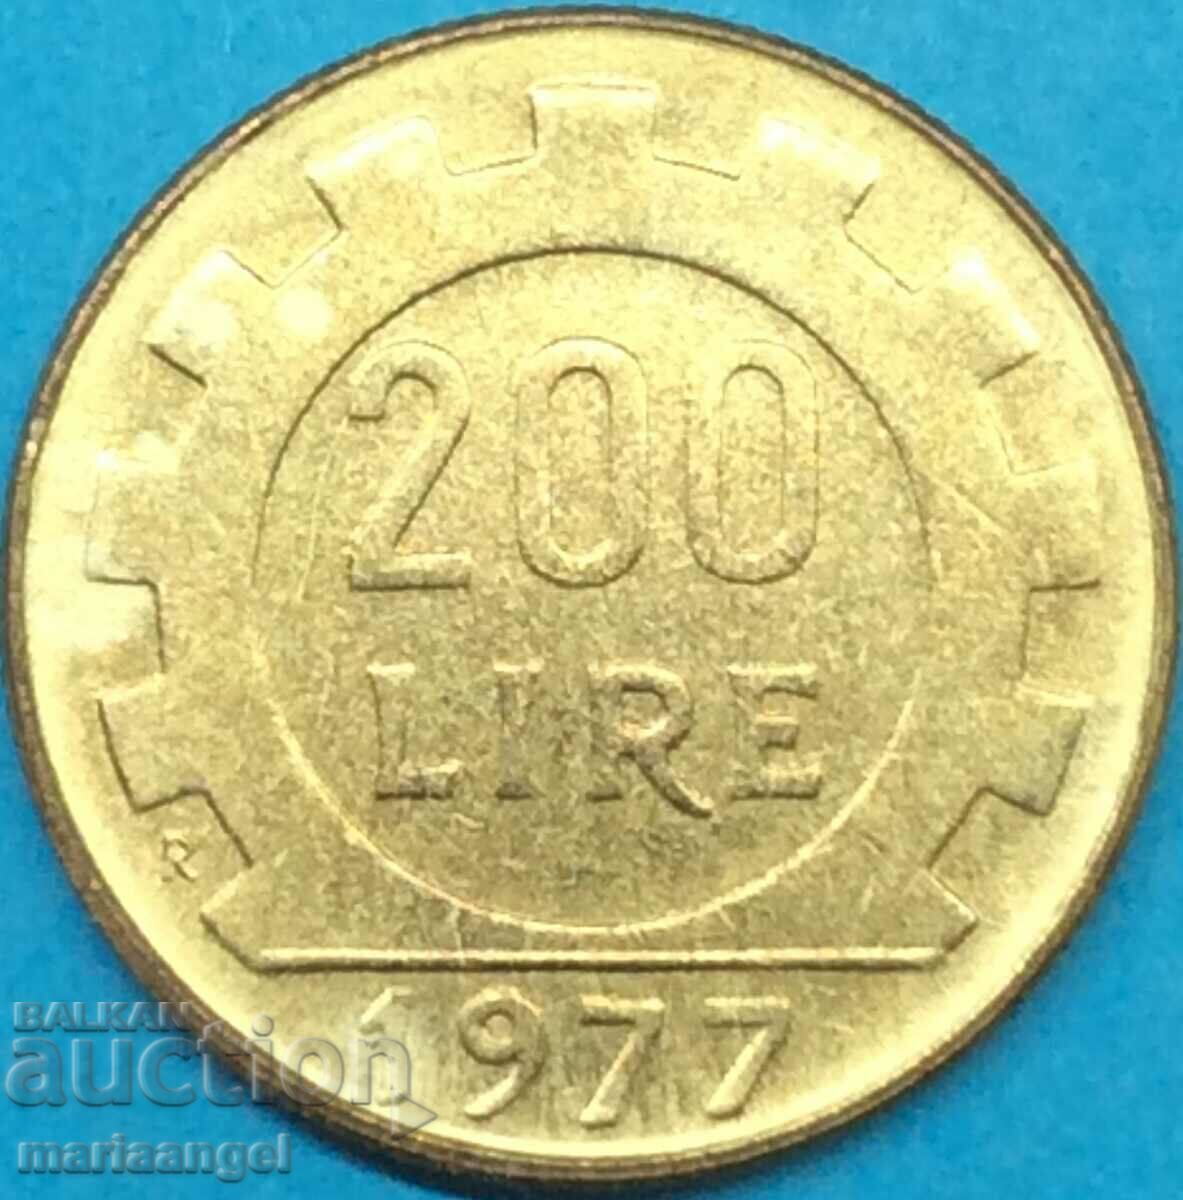 200 Lire 1977 Italy